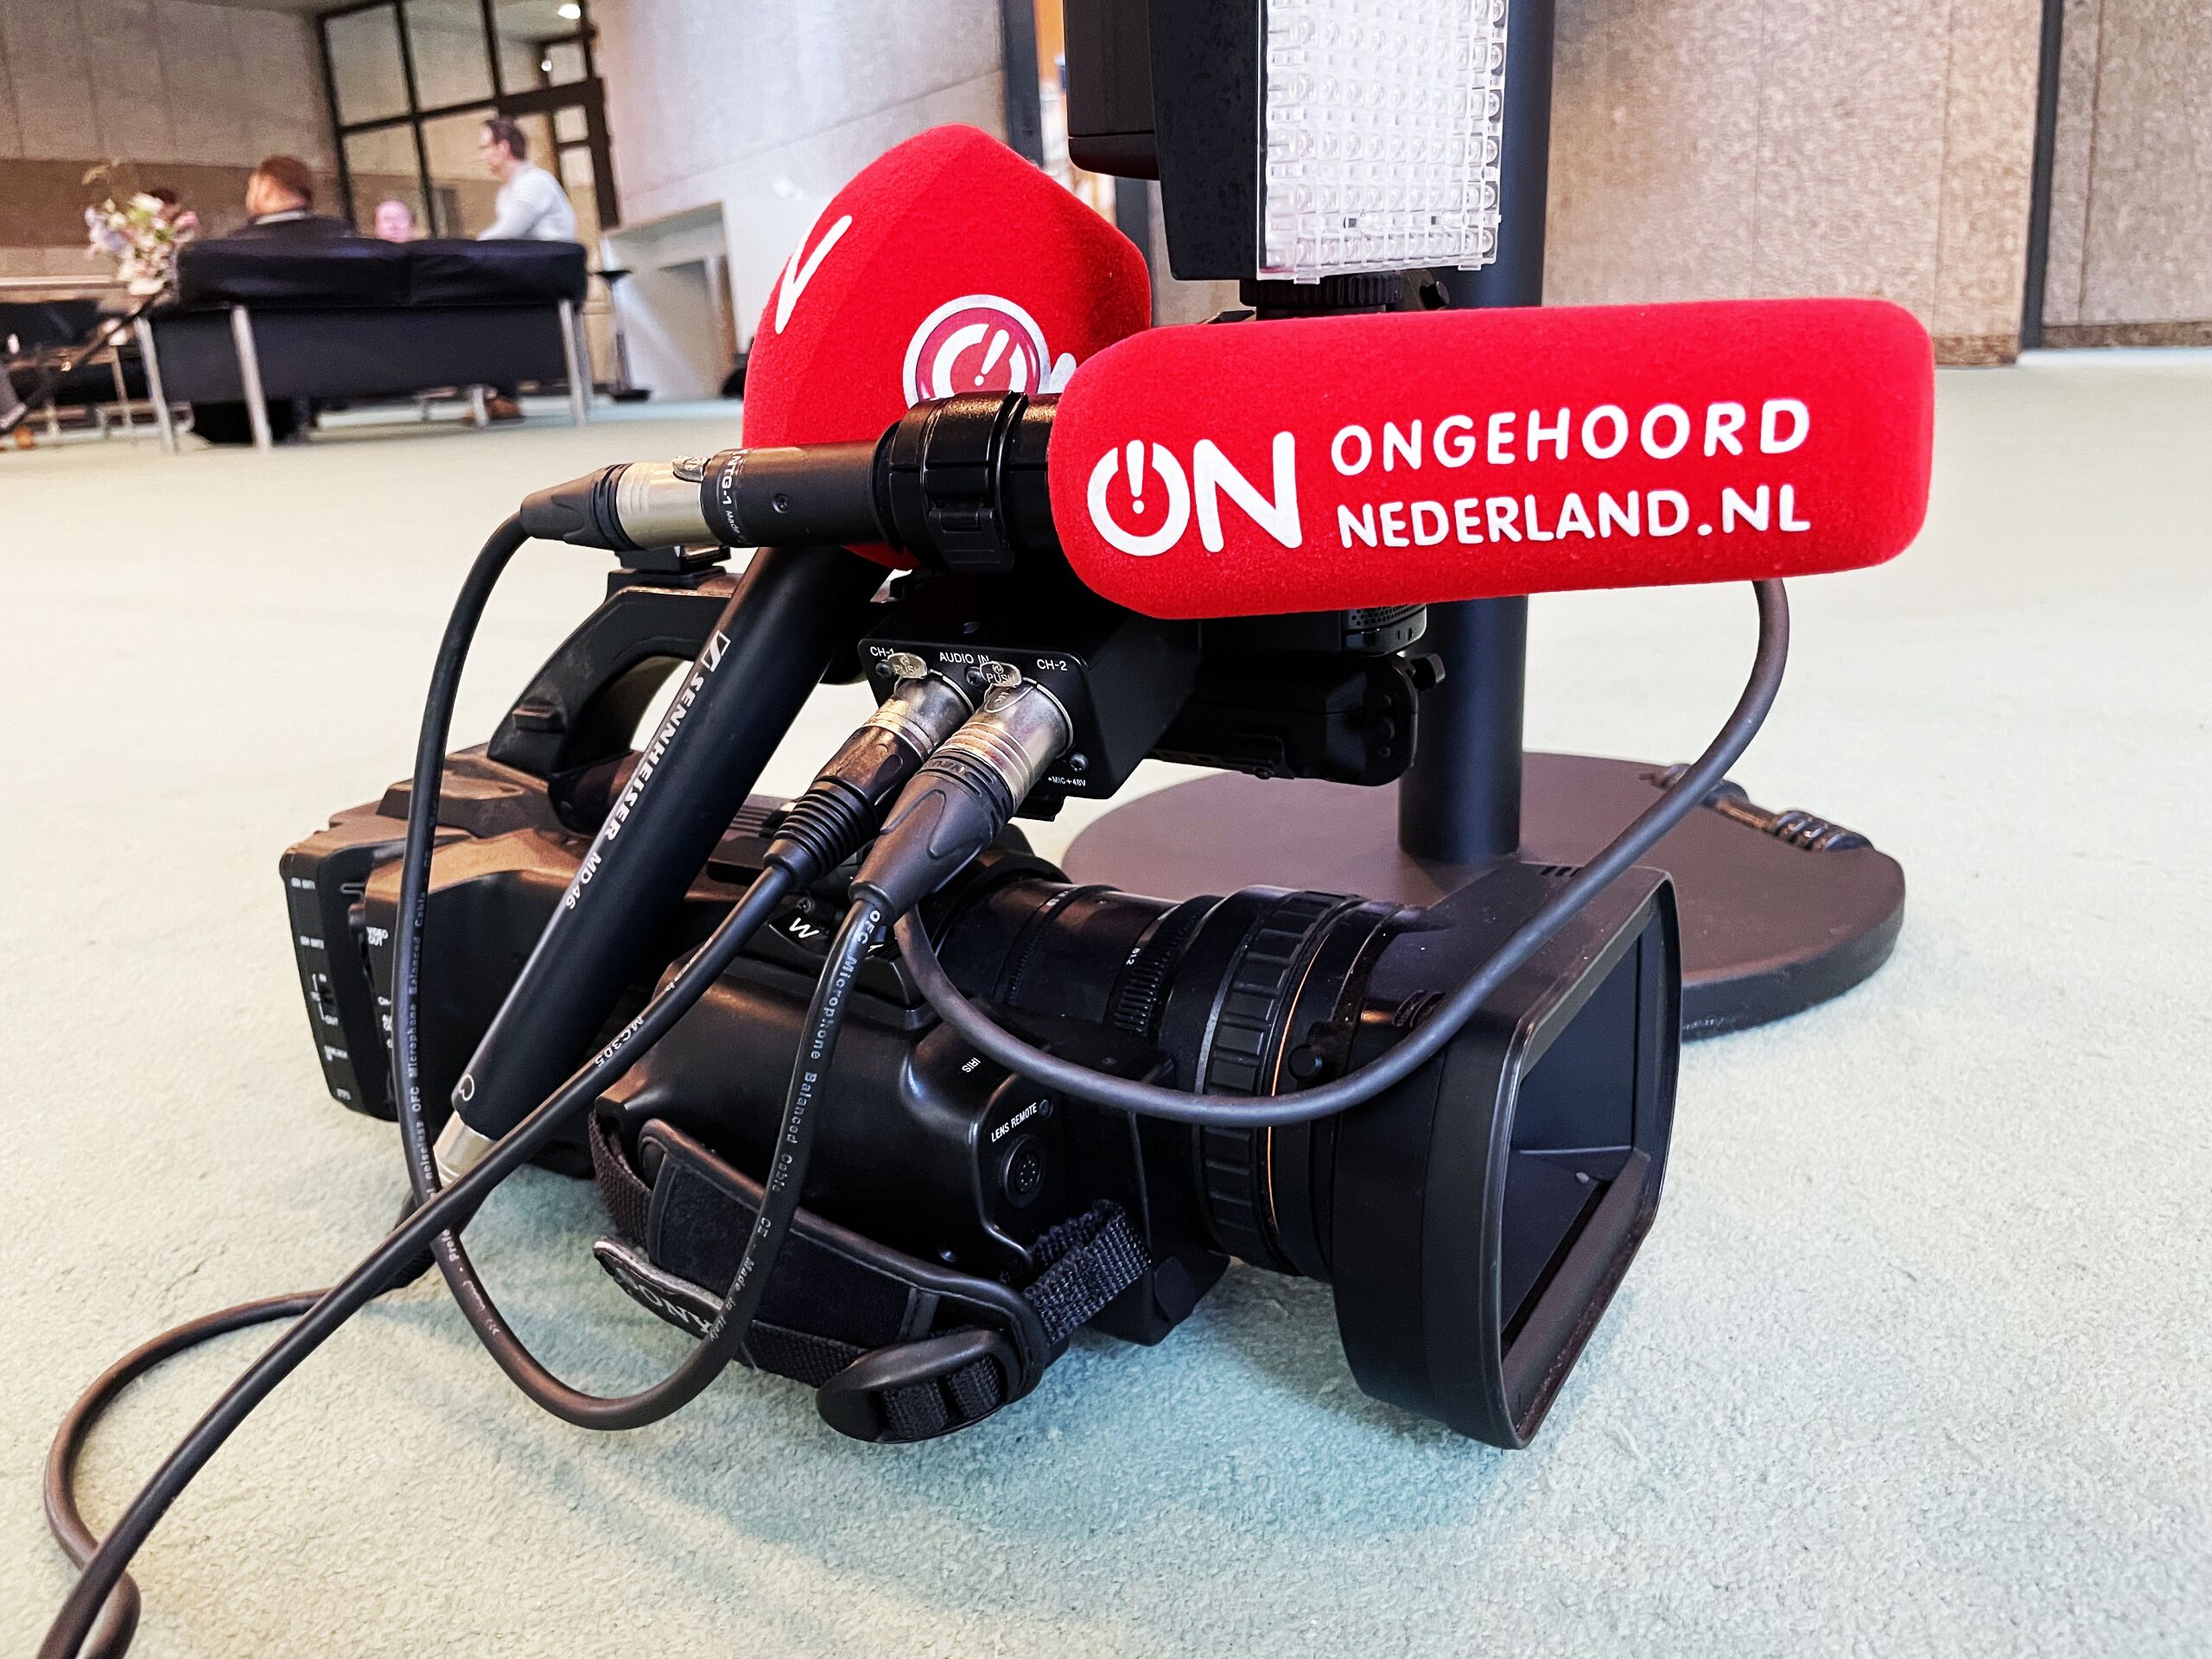 Omroep Ongehoord Nederland draagt actief bij aan de verspreiding van onjuiste informatie, concludeert de NPO-Ombudsman.